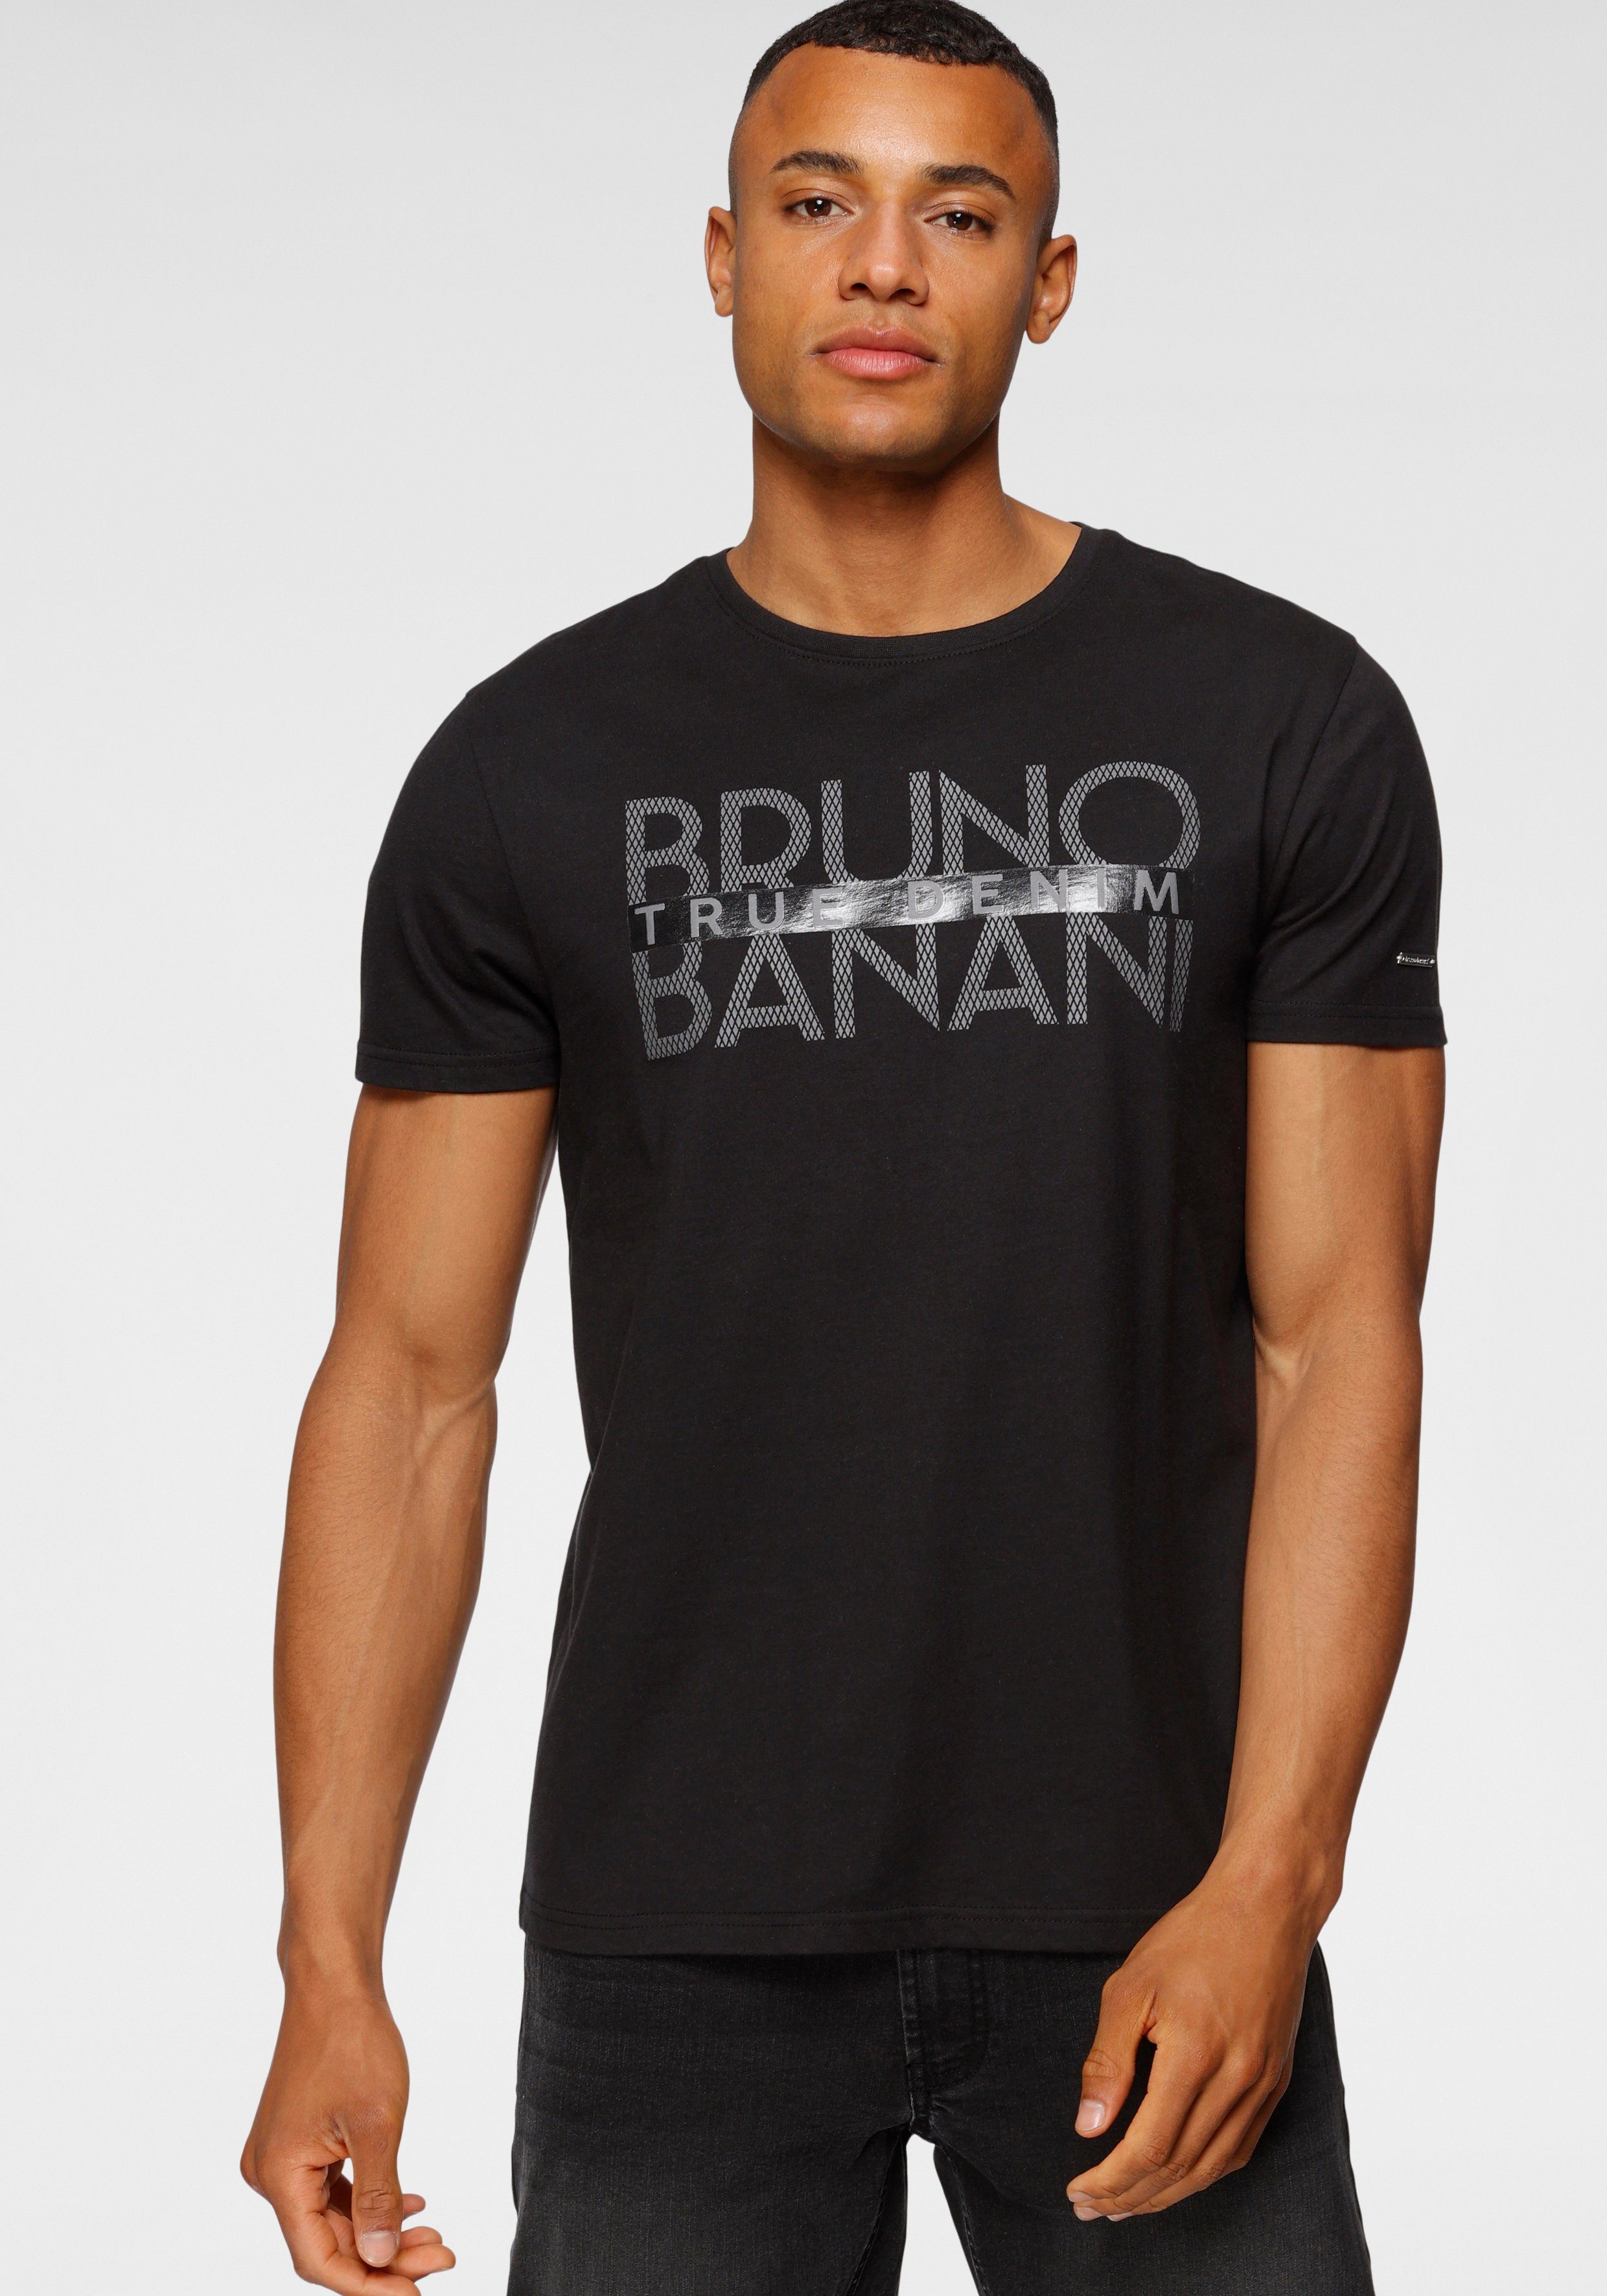 Bruno Banani T-Shirt mit Print glänzendem schwarz